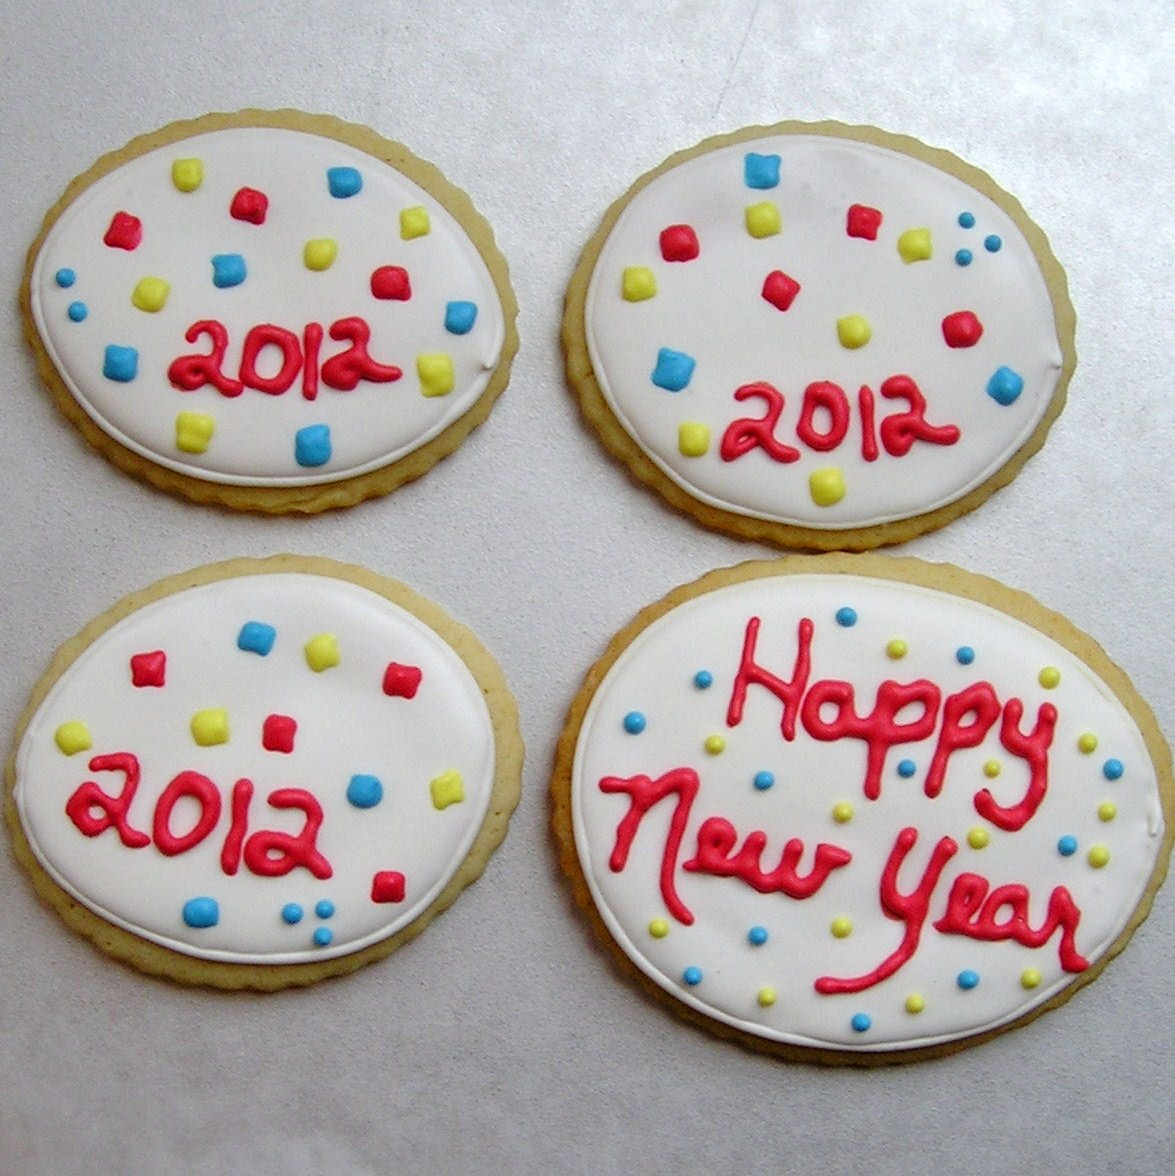 New Years Sugar Cookies
 Saturday December 31 2011